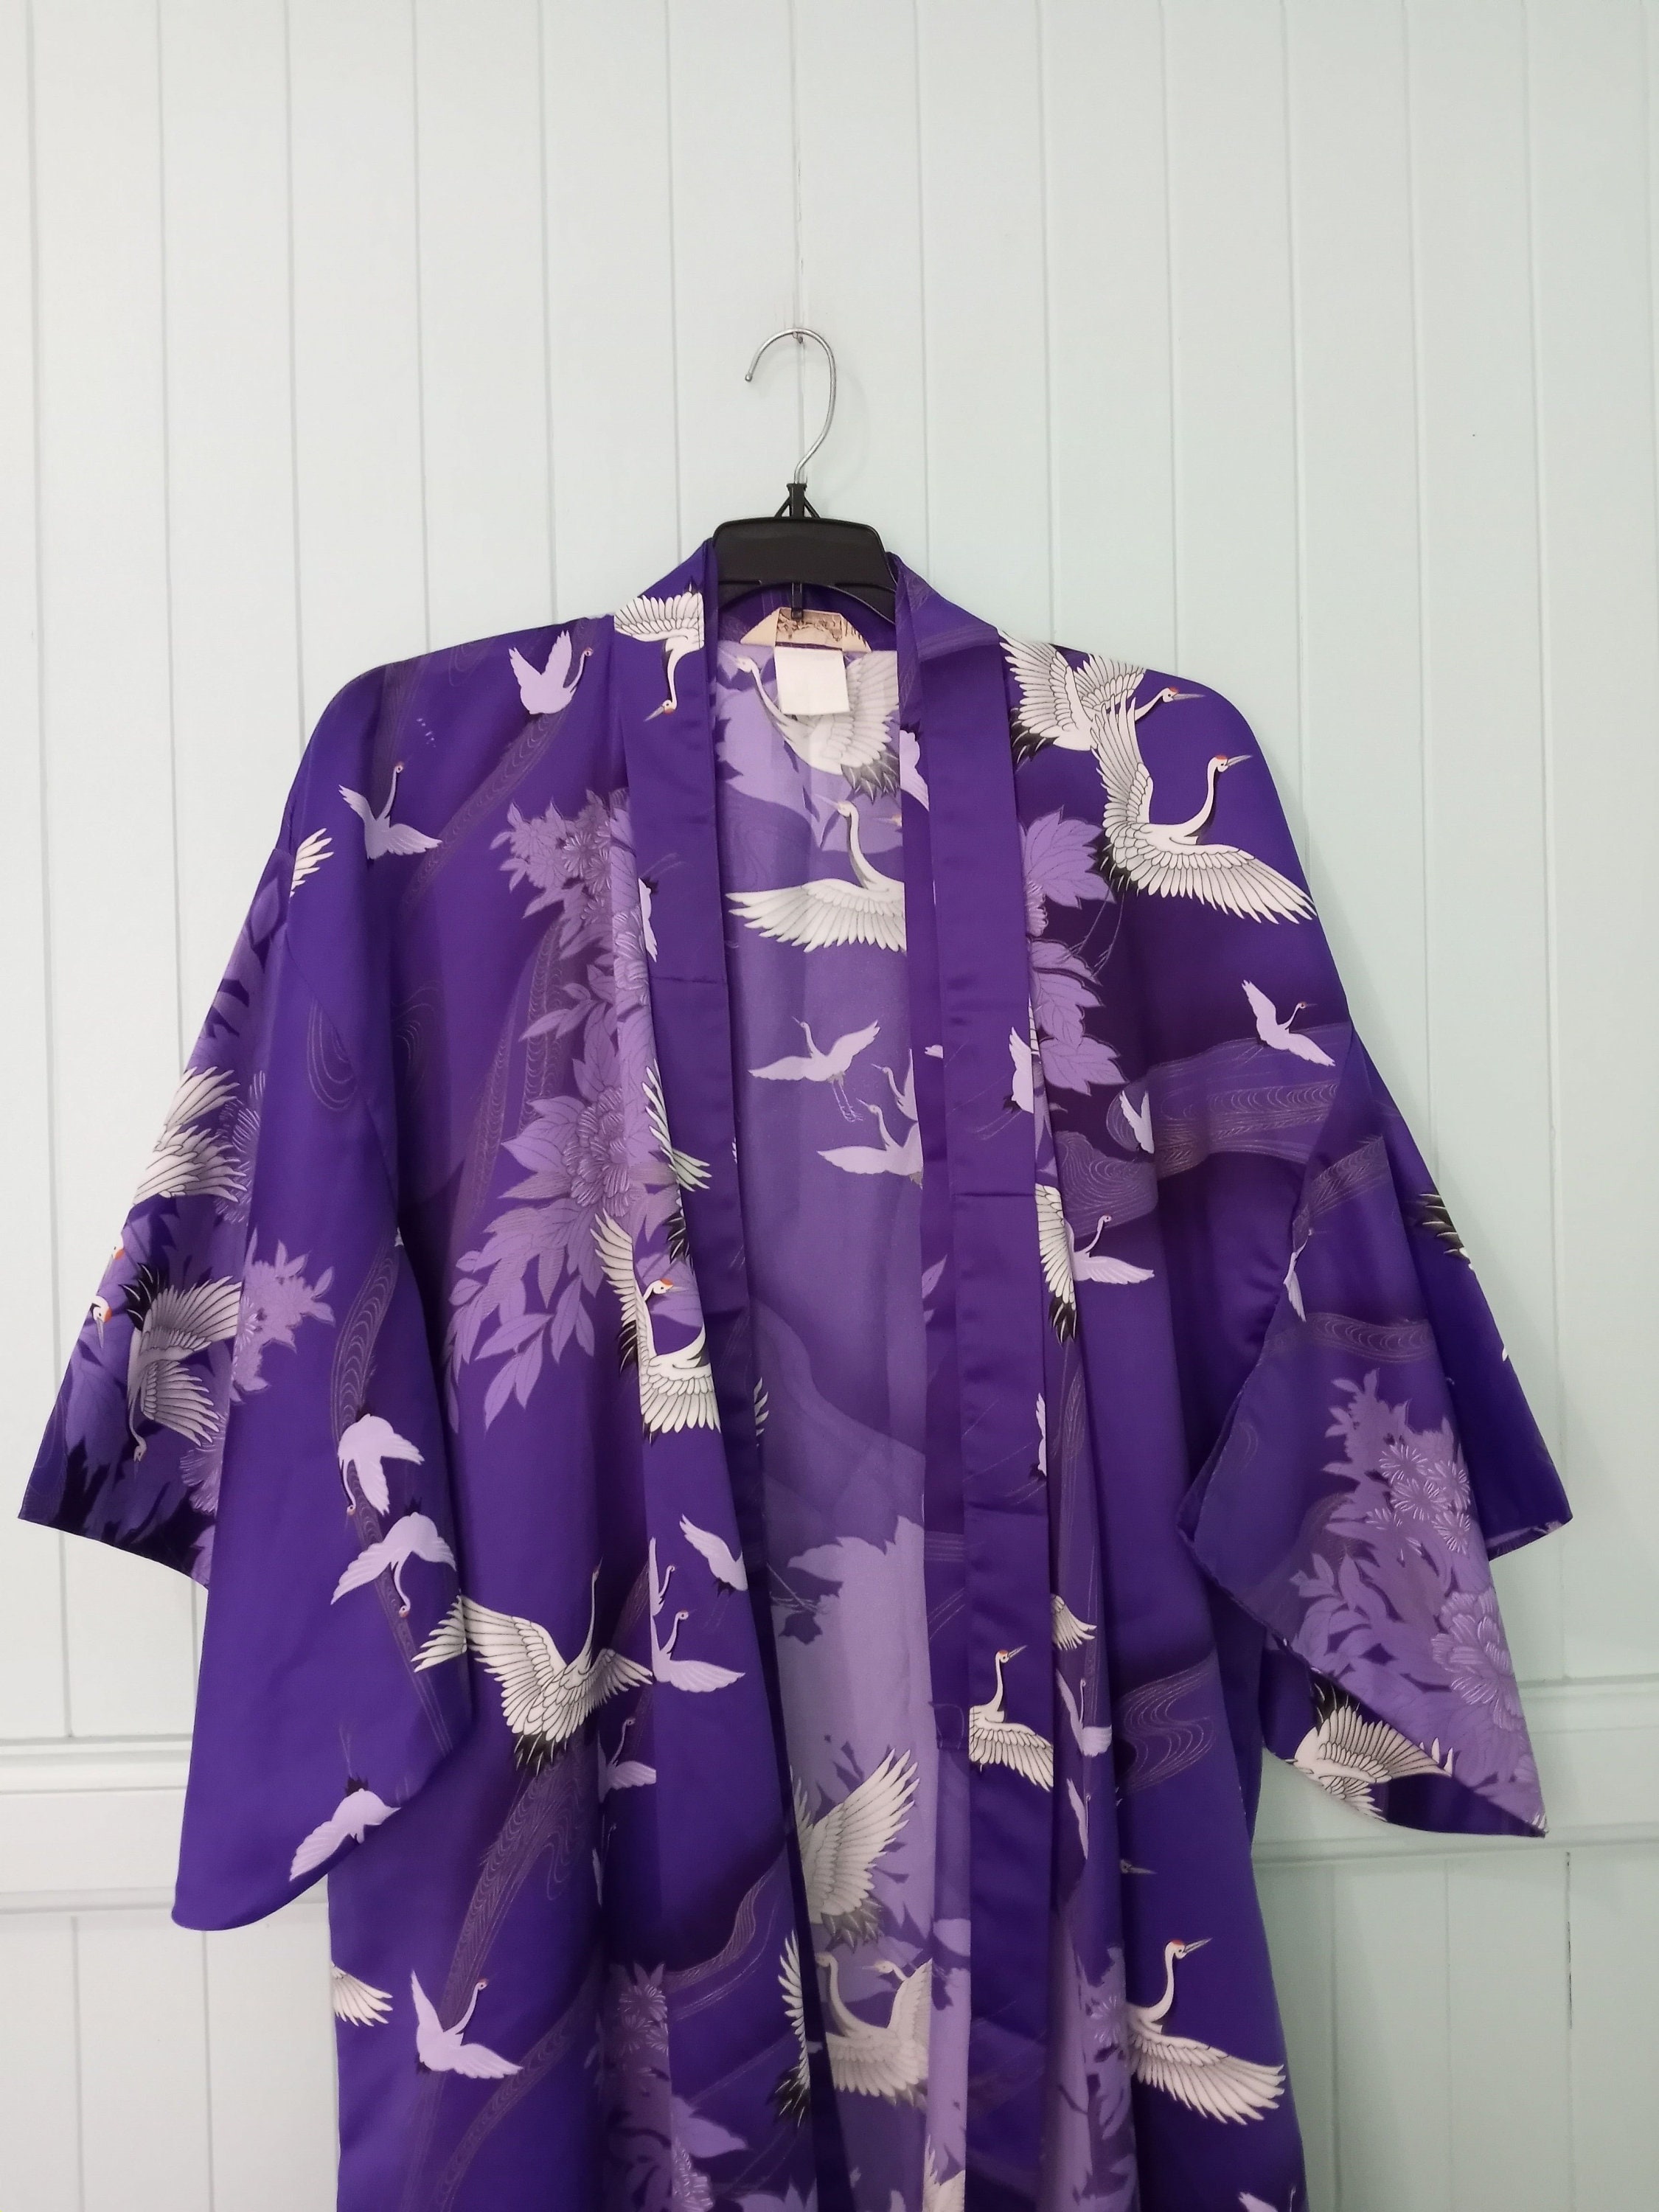 RH Robe Women's Short Sleeve Kimono Cotton Bathrobe Dressing Gown Slee –  Richie House USA